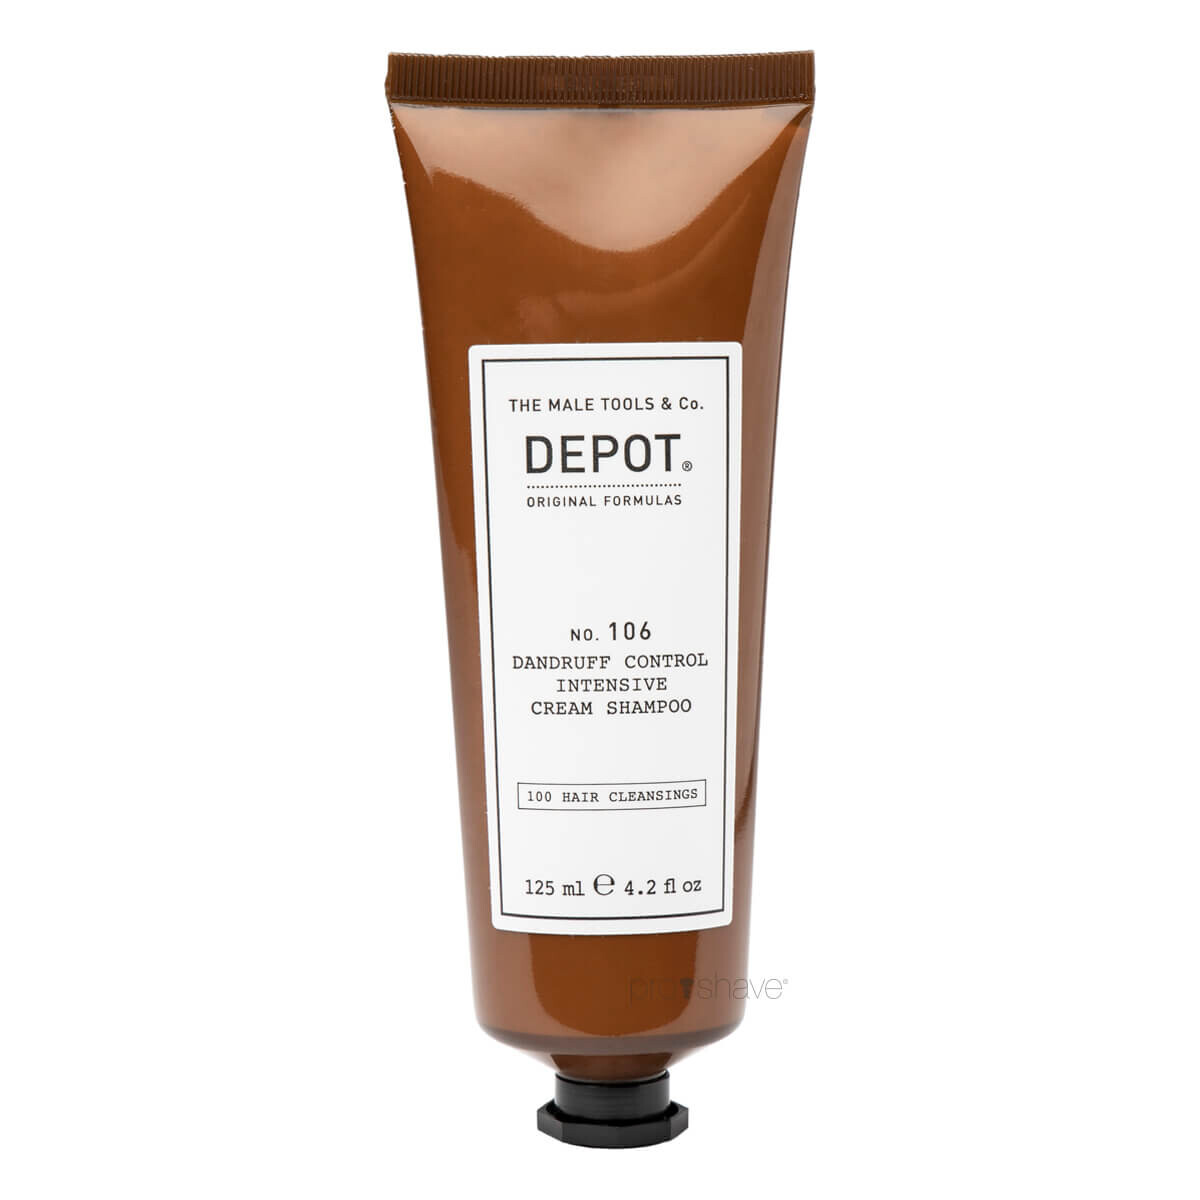 Billede af Depot Dandruff Control Intensiv Shampoo, No. 106, 125 ml.